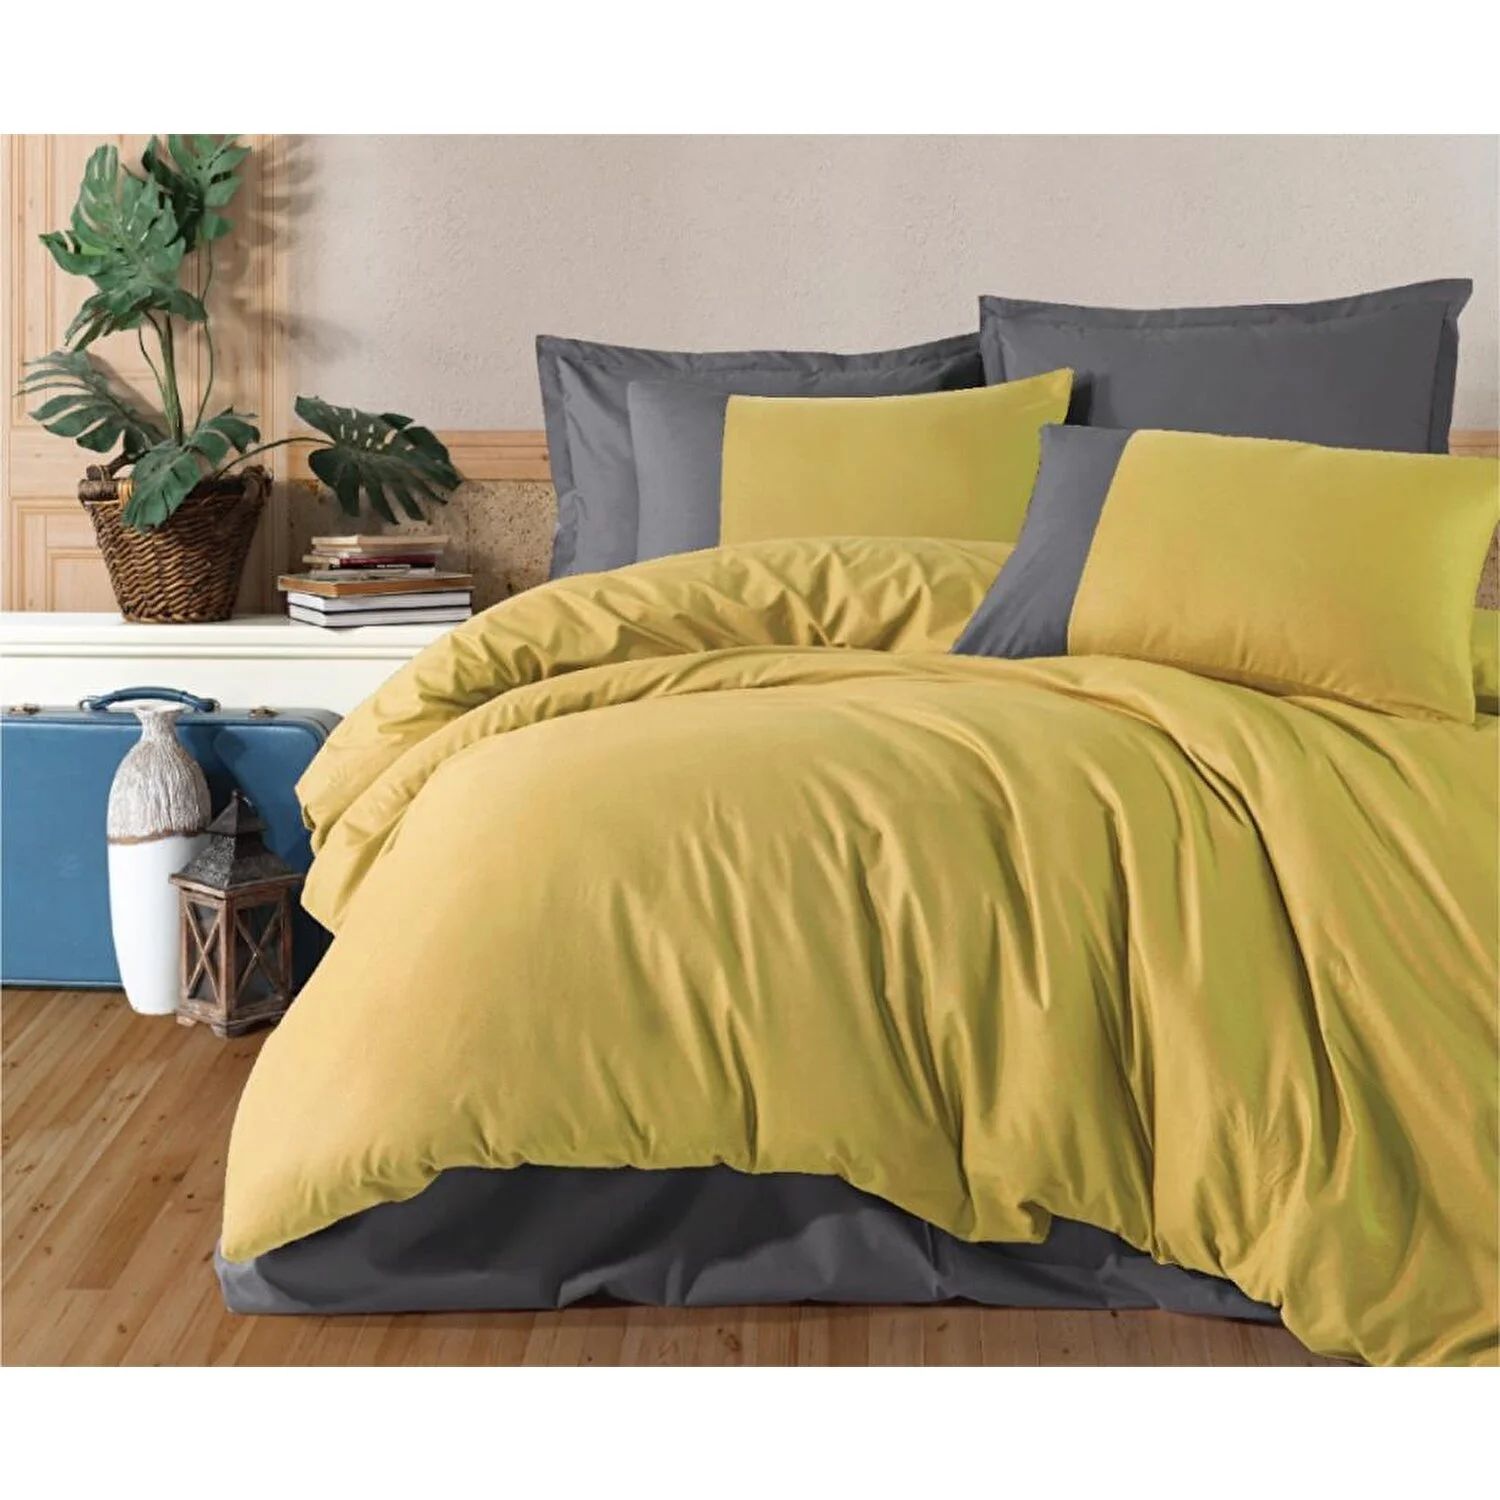 Комплект постельного белья серии Clasy Boutique Pure V7, желтый